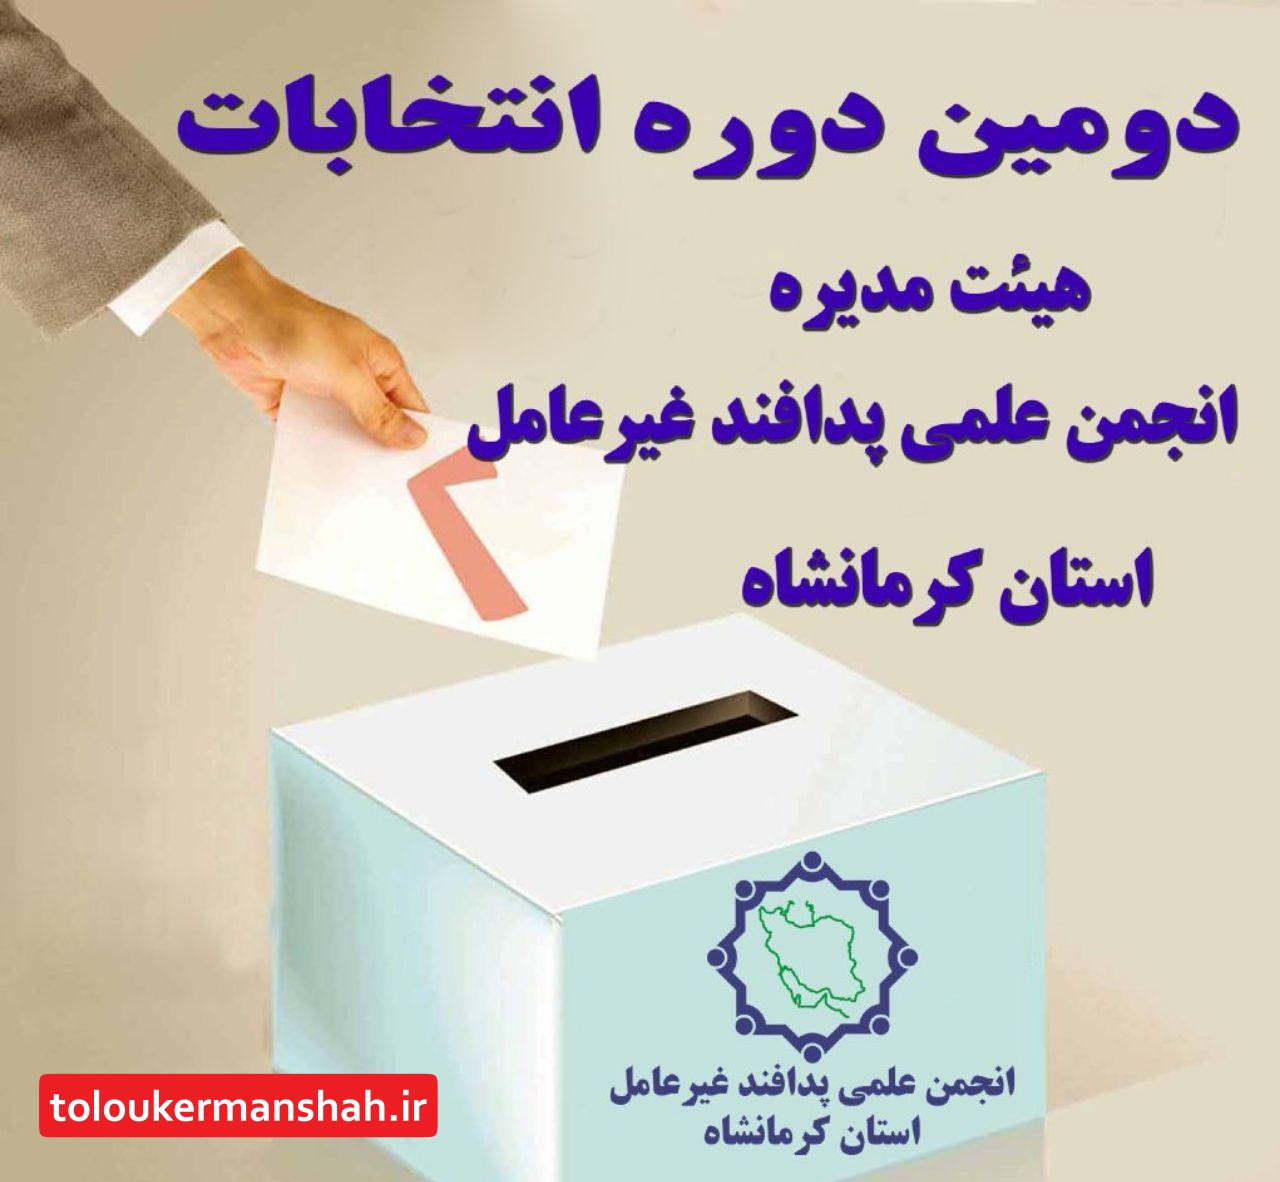 دومین دوره انتخابات هیات مدیره شعبه انجمن علمی پدافند غیر عامل استان کرمانشاه برگزار شد